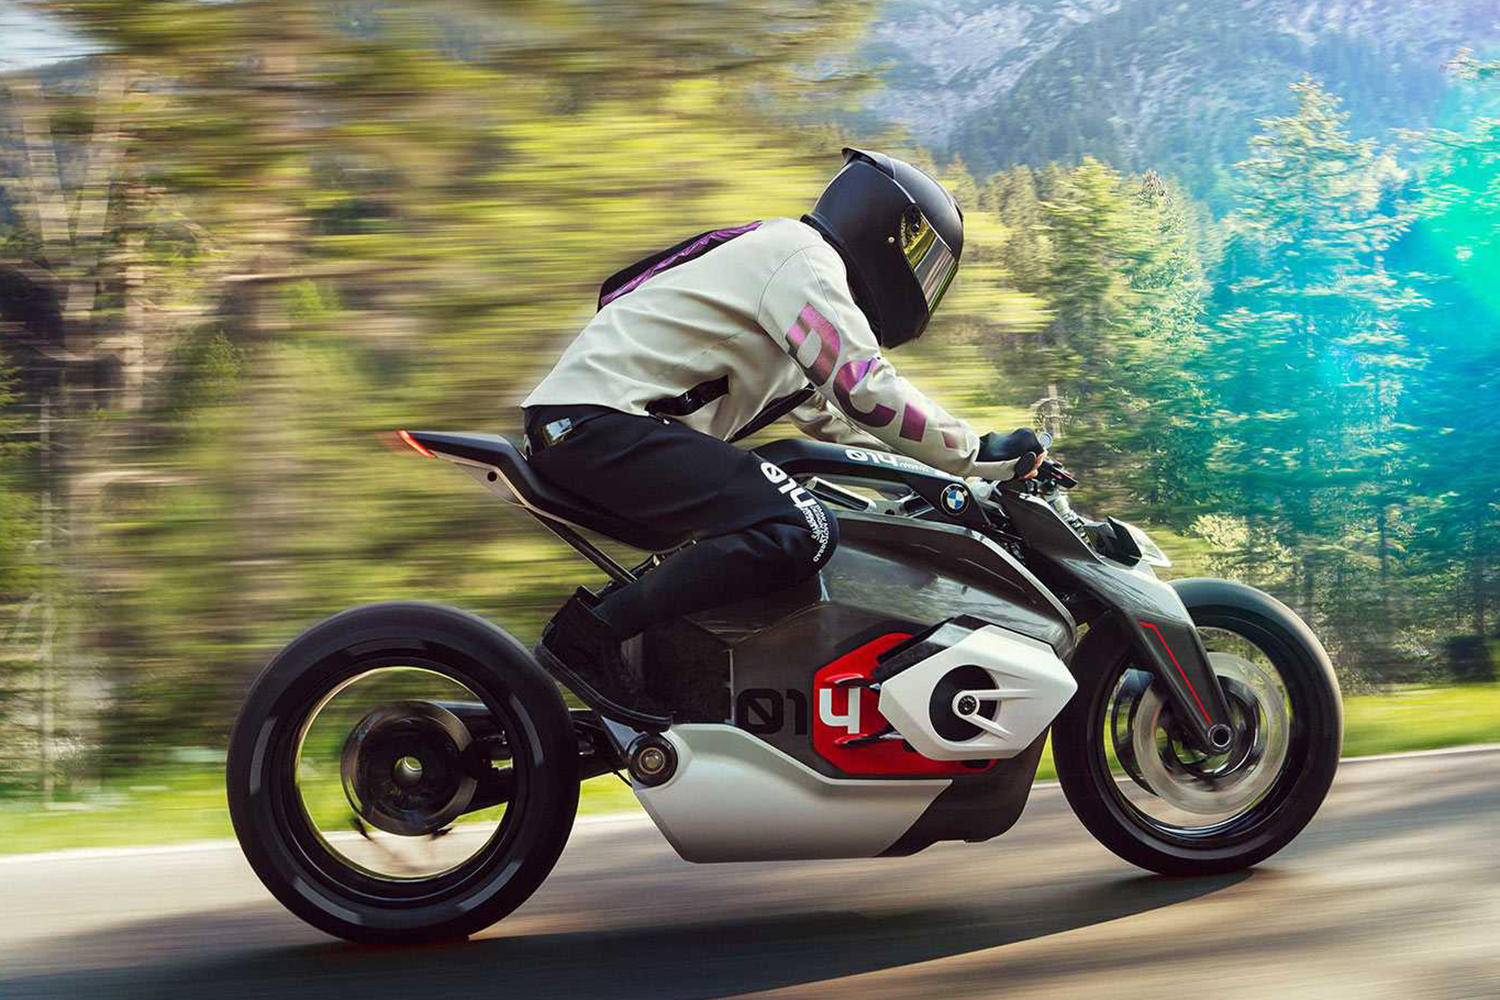 百公里加速仅2.9秒 宝马纯电动摩托车原型车曝光